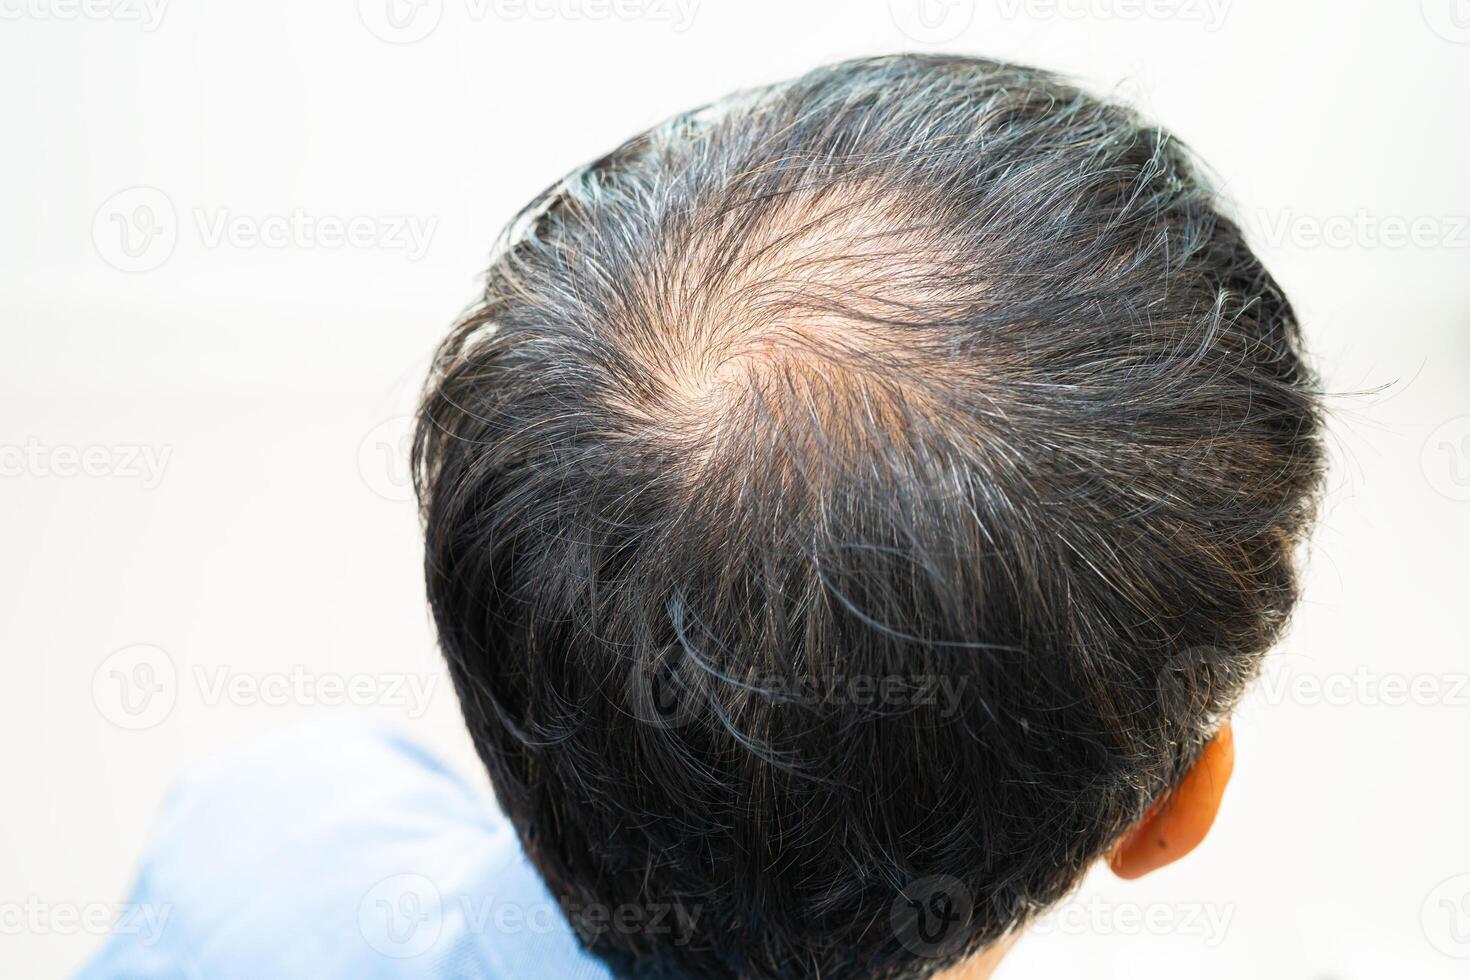 careca na cabeça do meio e começar sem perda de cabelo glabro de homem de escritório ativo inteligente de negócios asiáticos maduros. foto